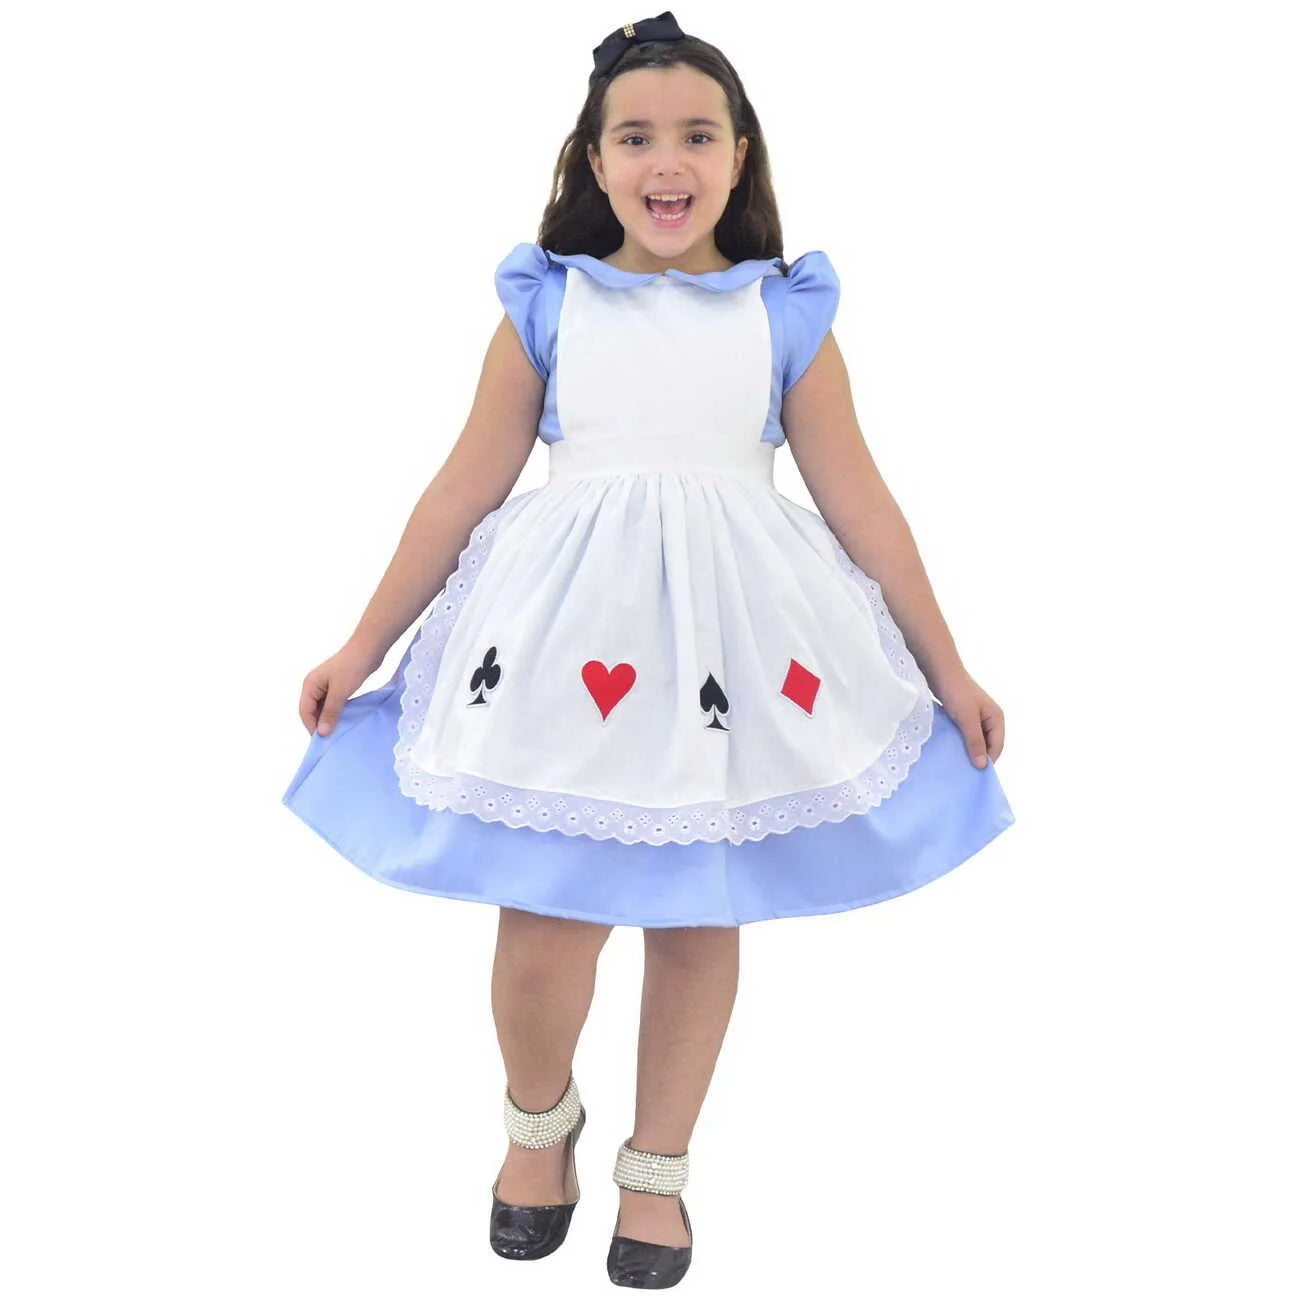 https://modernameninas.com/cdn/shop/files/alice-wonderland-dress-apron-cards-baby-girl-cosplay-moderna-meninas-709.webp?v=1701973547